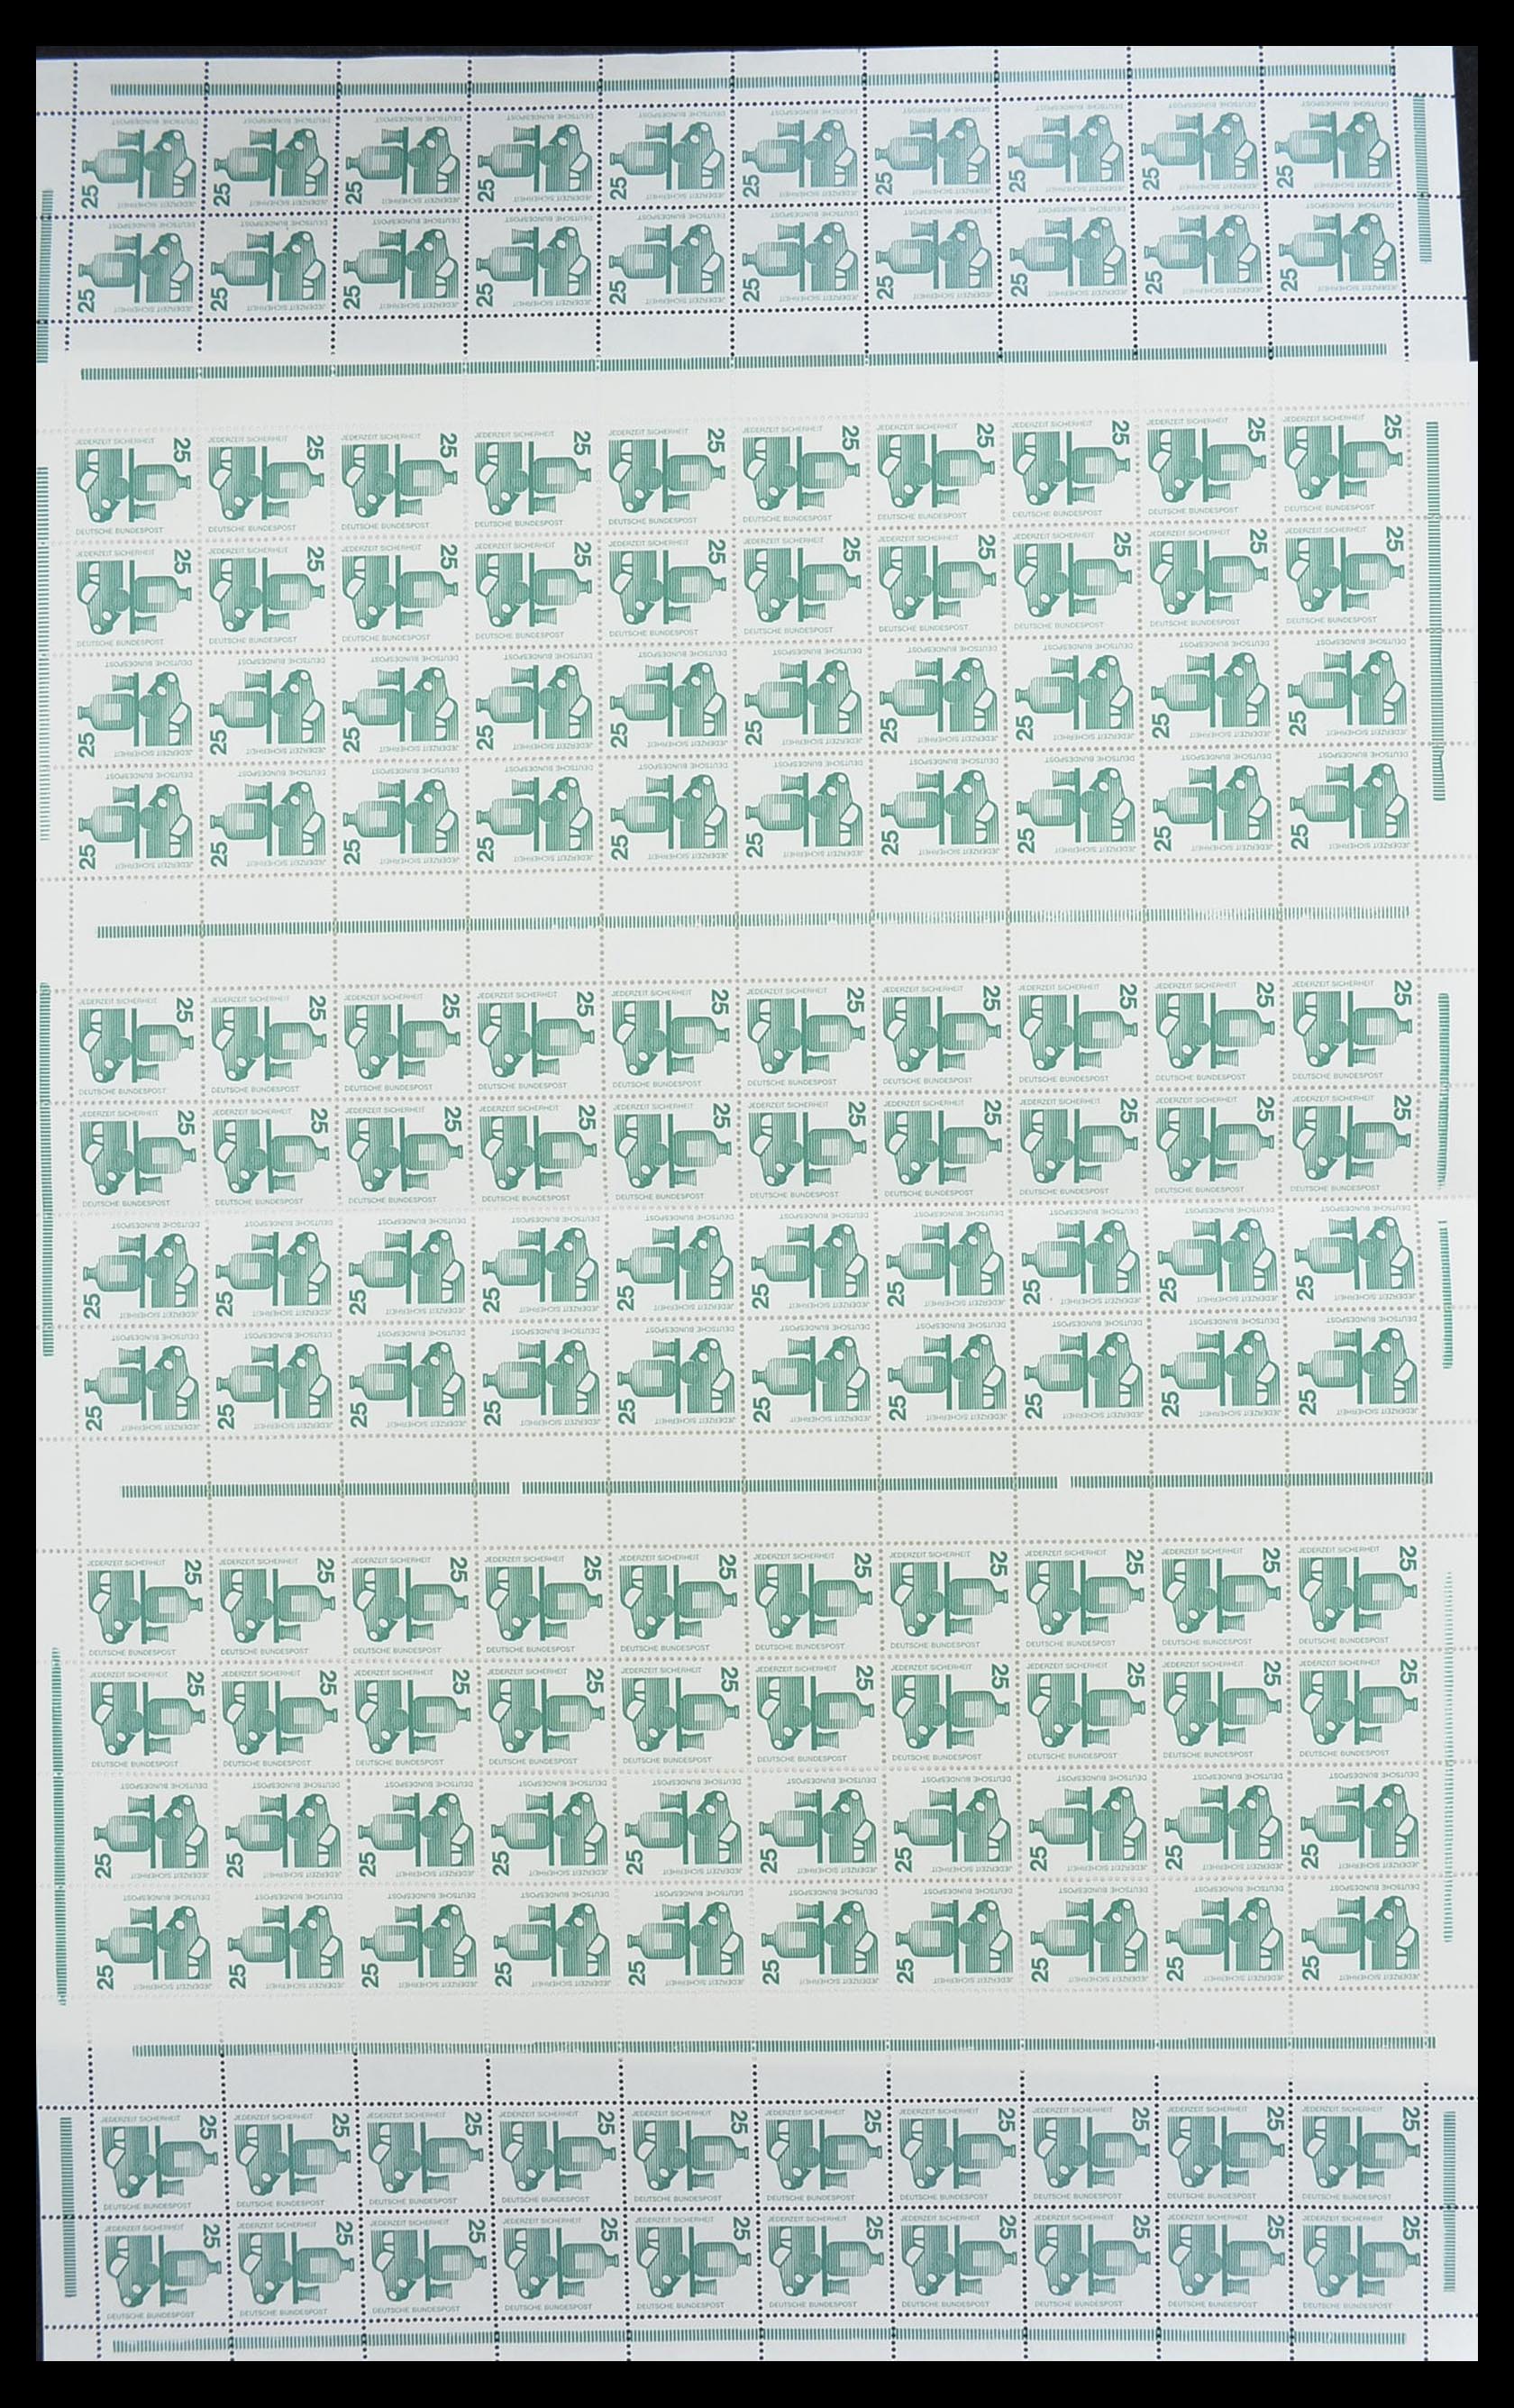 33753 004 - Stamp collection 33753 Bund and Berlin markenheftchenbogen 1966-1973.